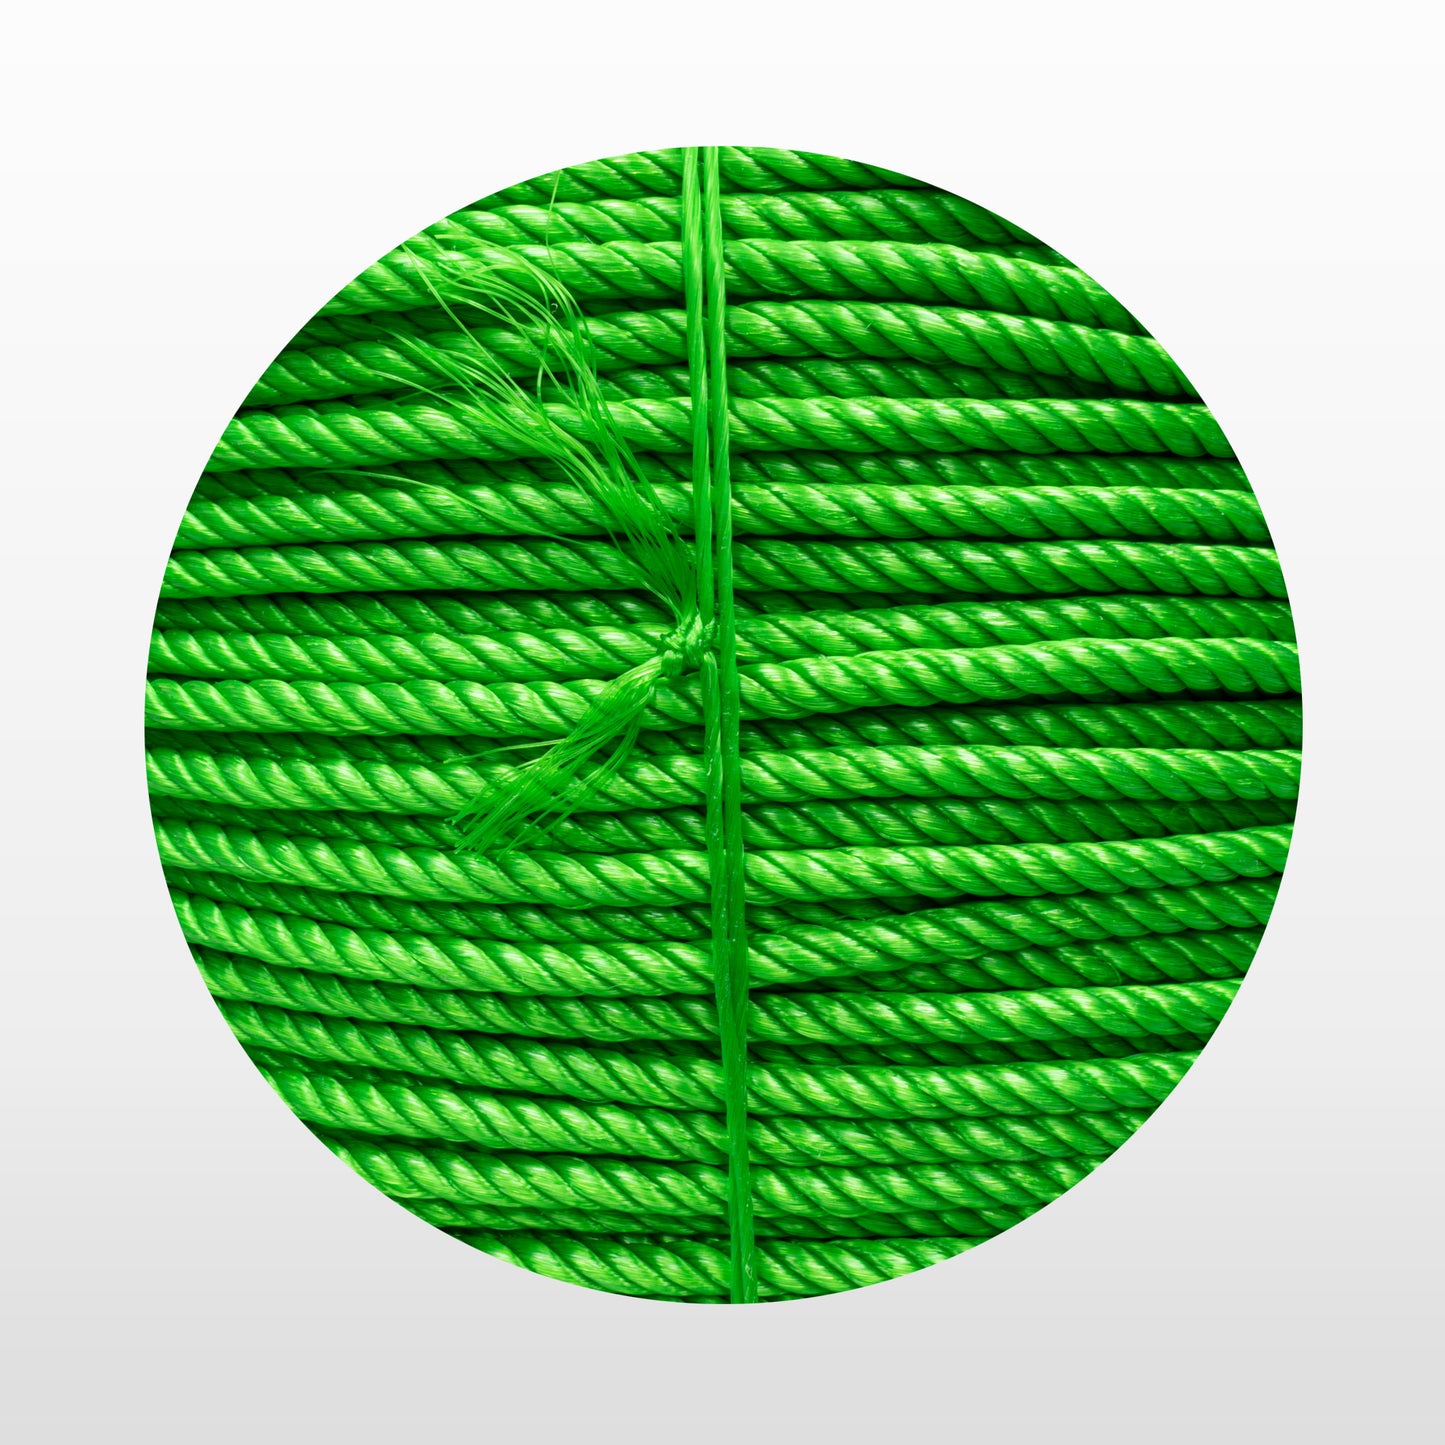 Cable de Polipropileno de 8 mm con 4 puntas verde